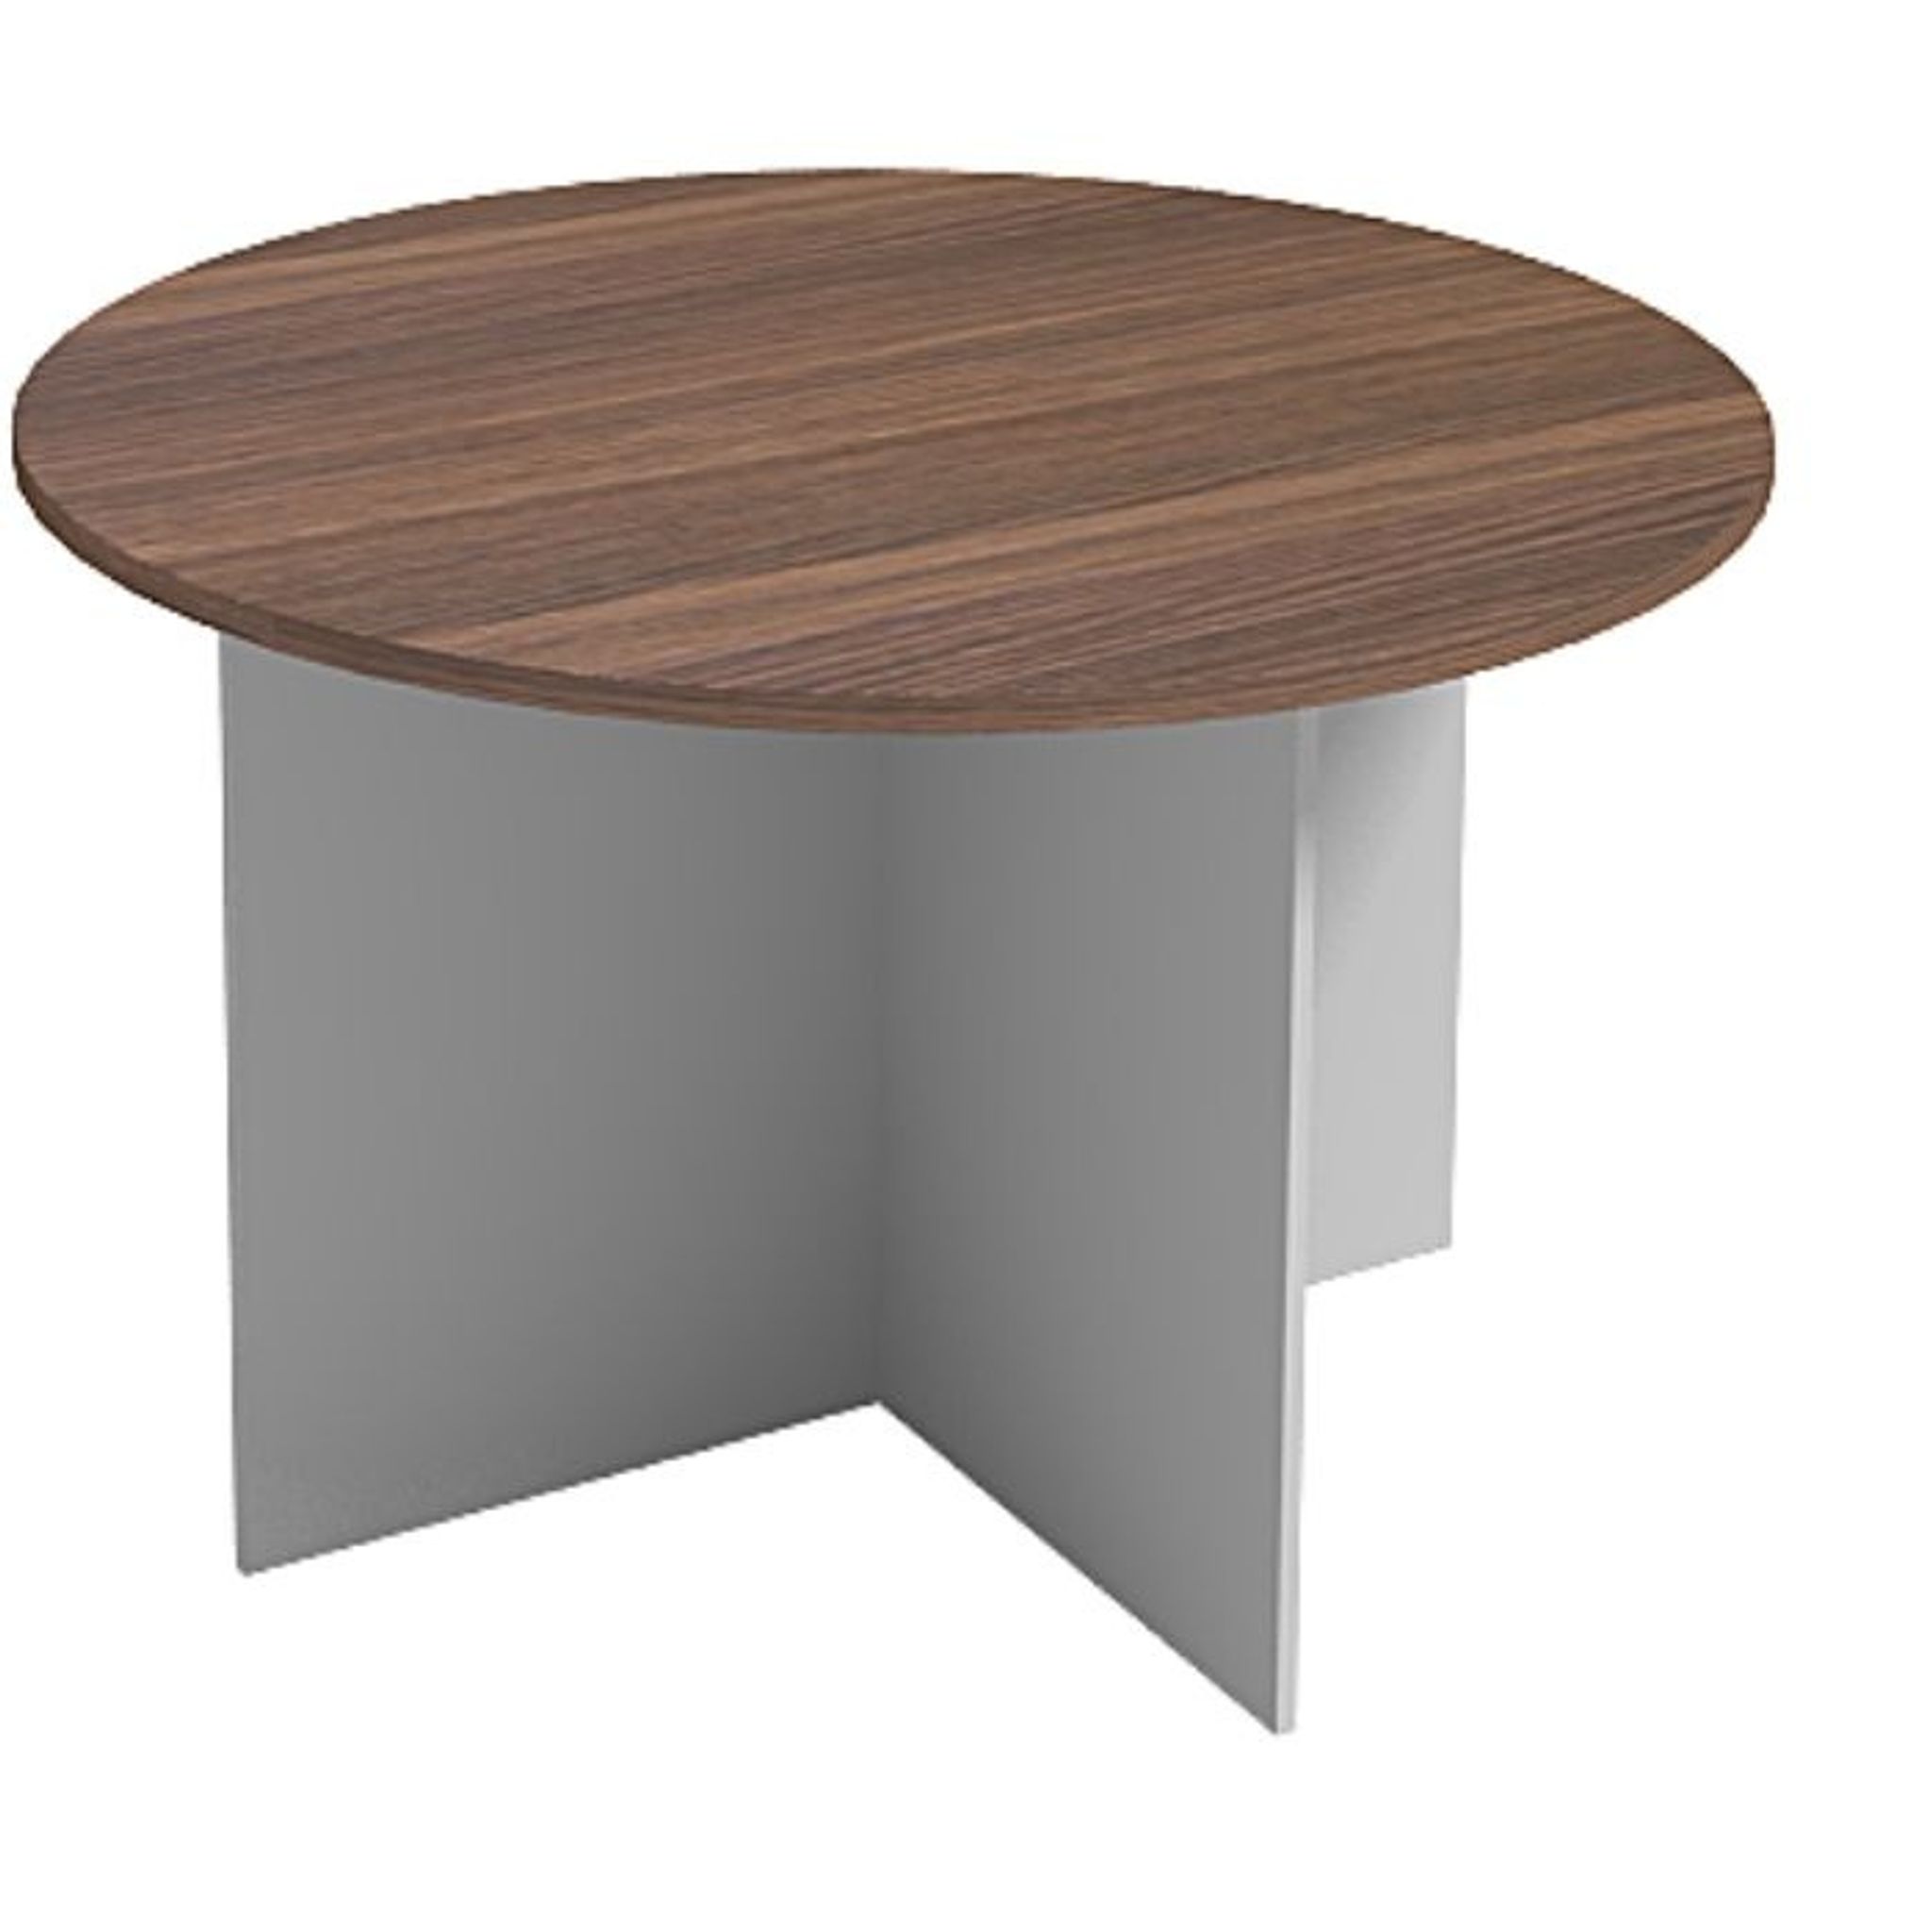 Jednací stůl s kulatou deskou PRIMO GRAY, průměr 1200 mm, šedá / ořech